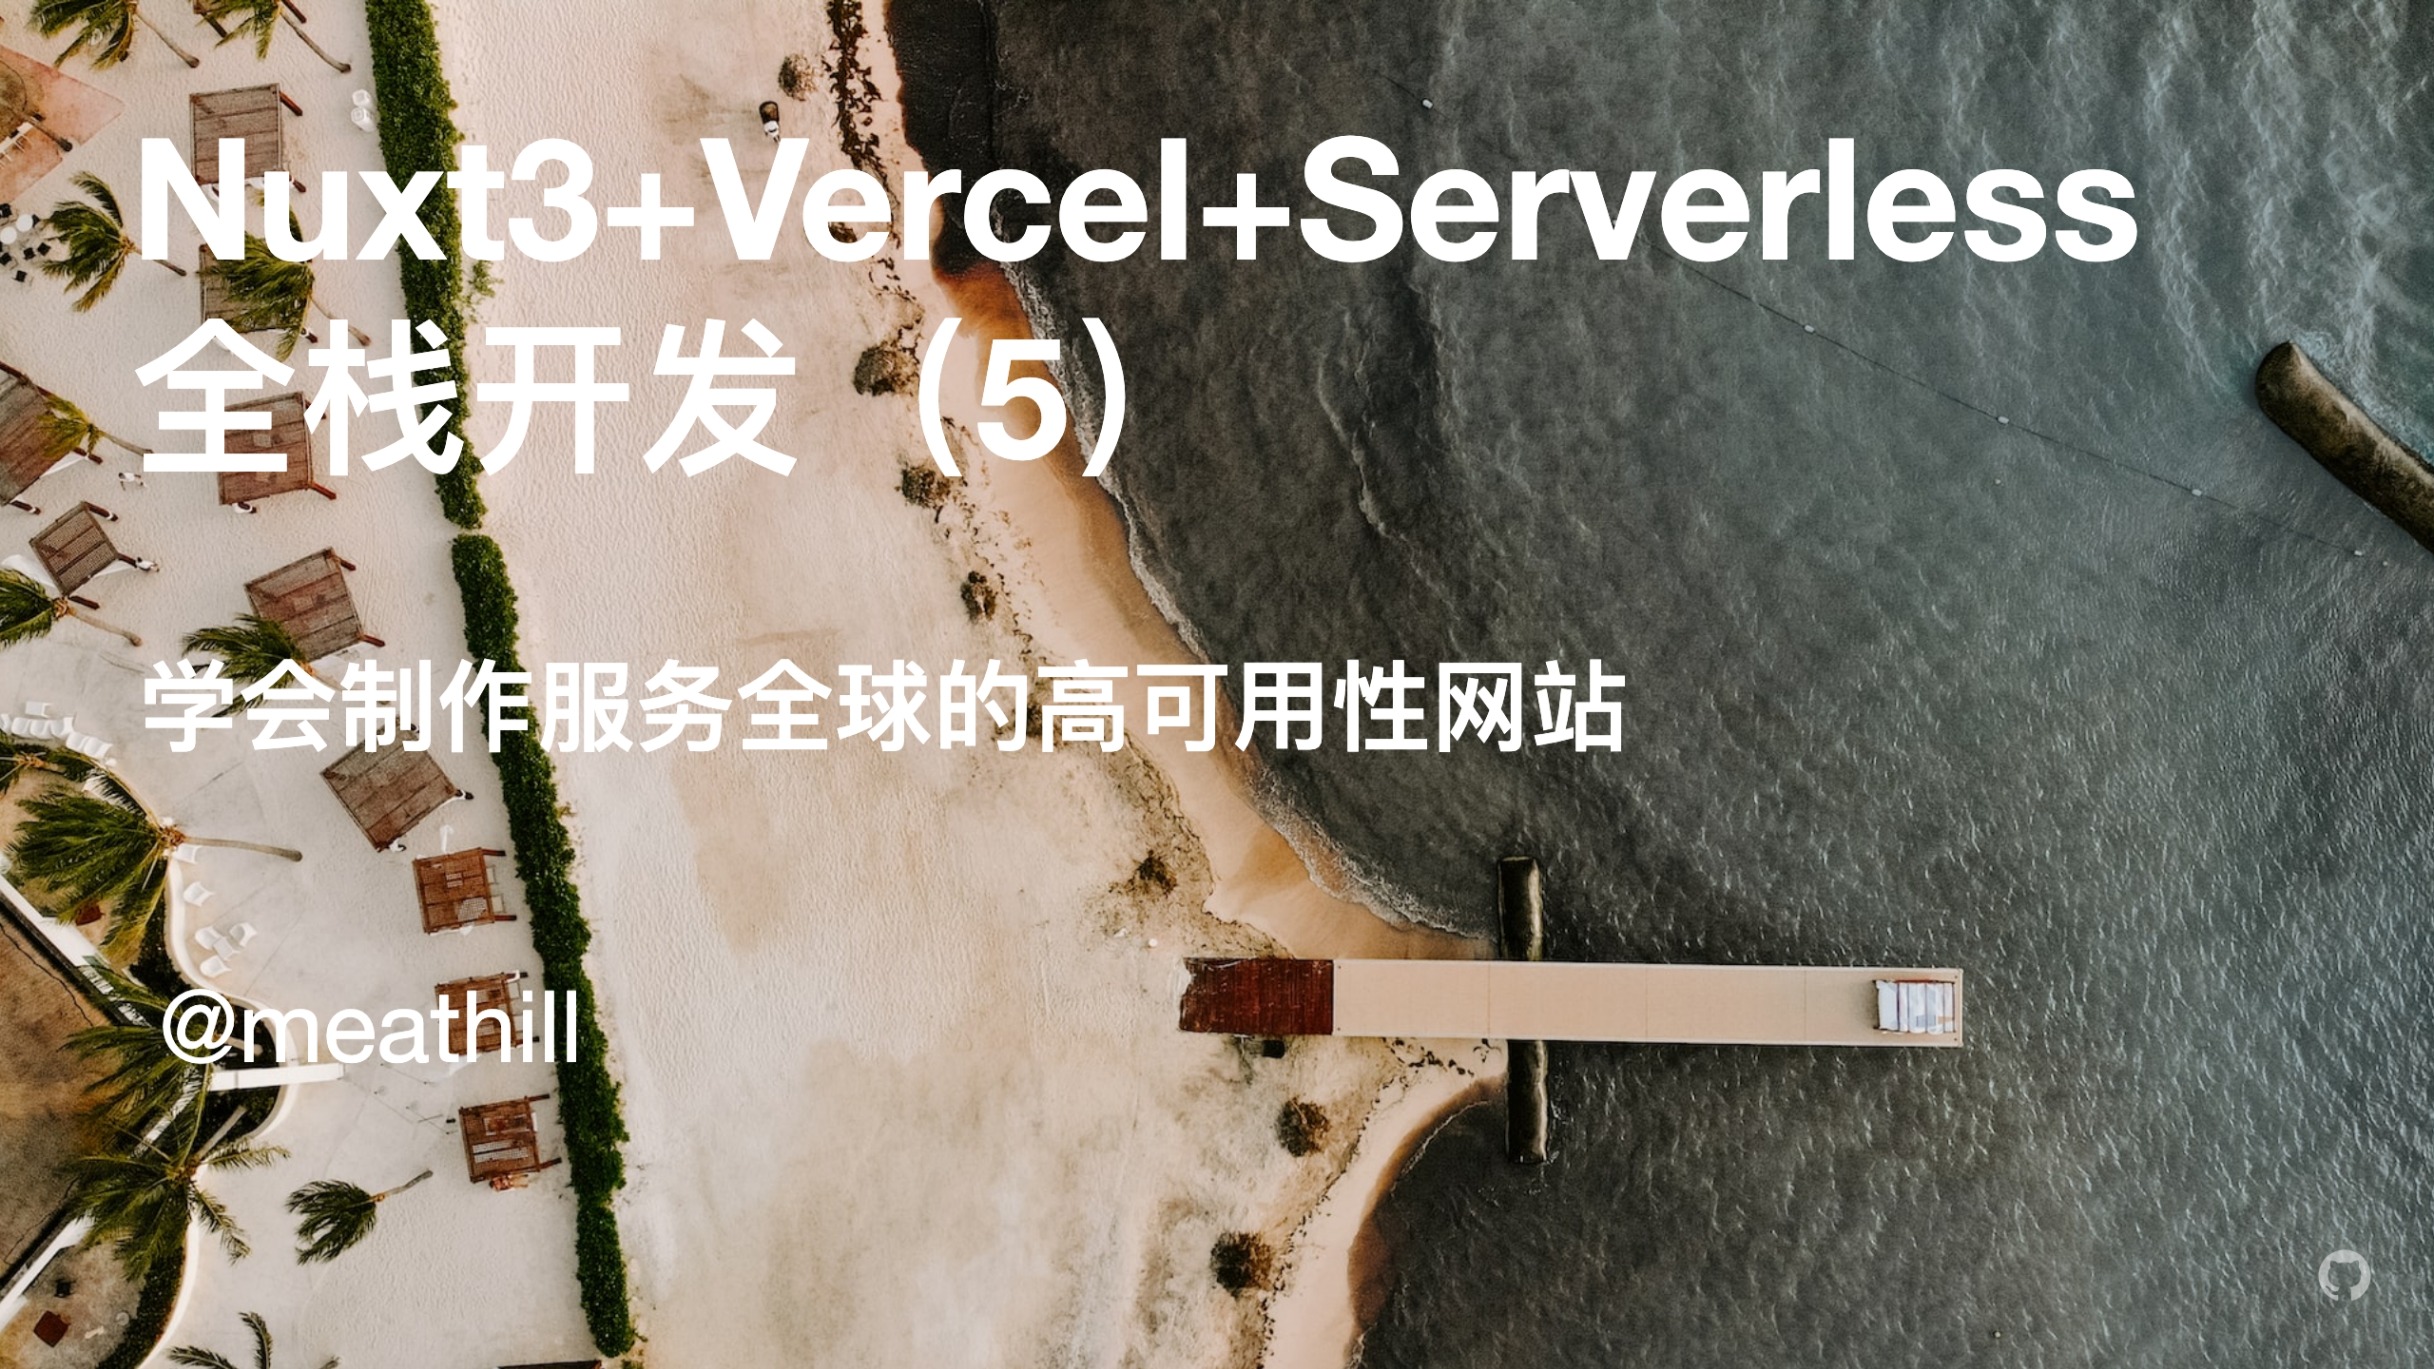 【视频】Nuxt3+Vercel+Serverless 全栈开发（5）：部署到 Vercel+开发统计功能